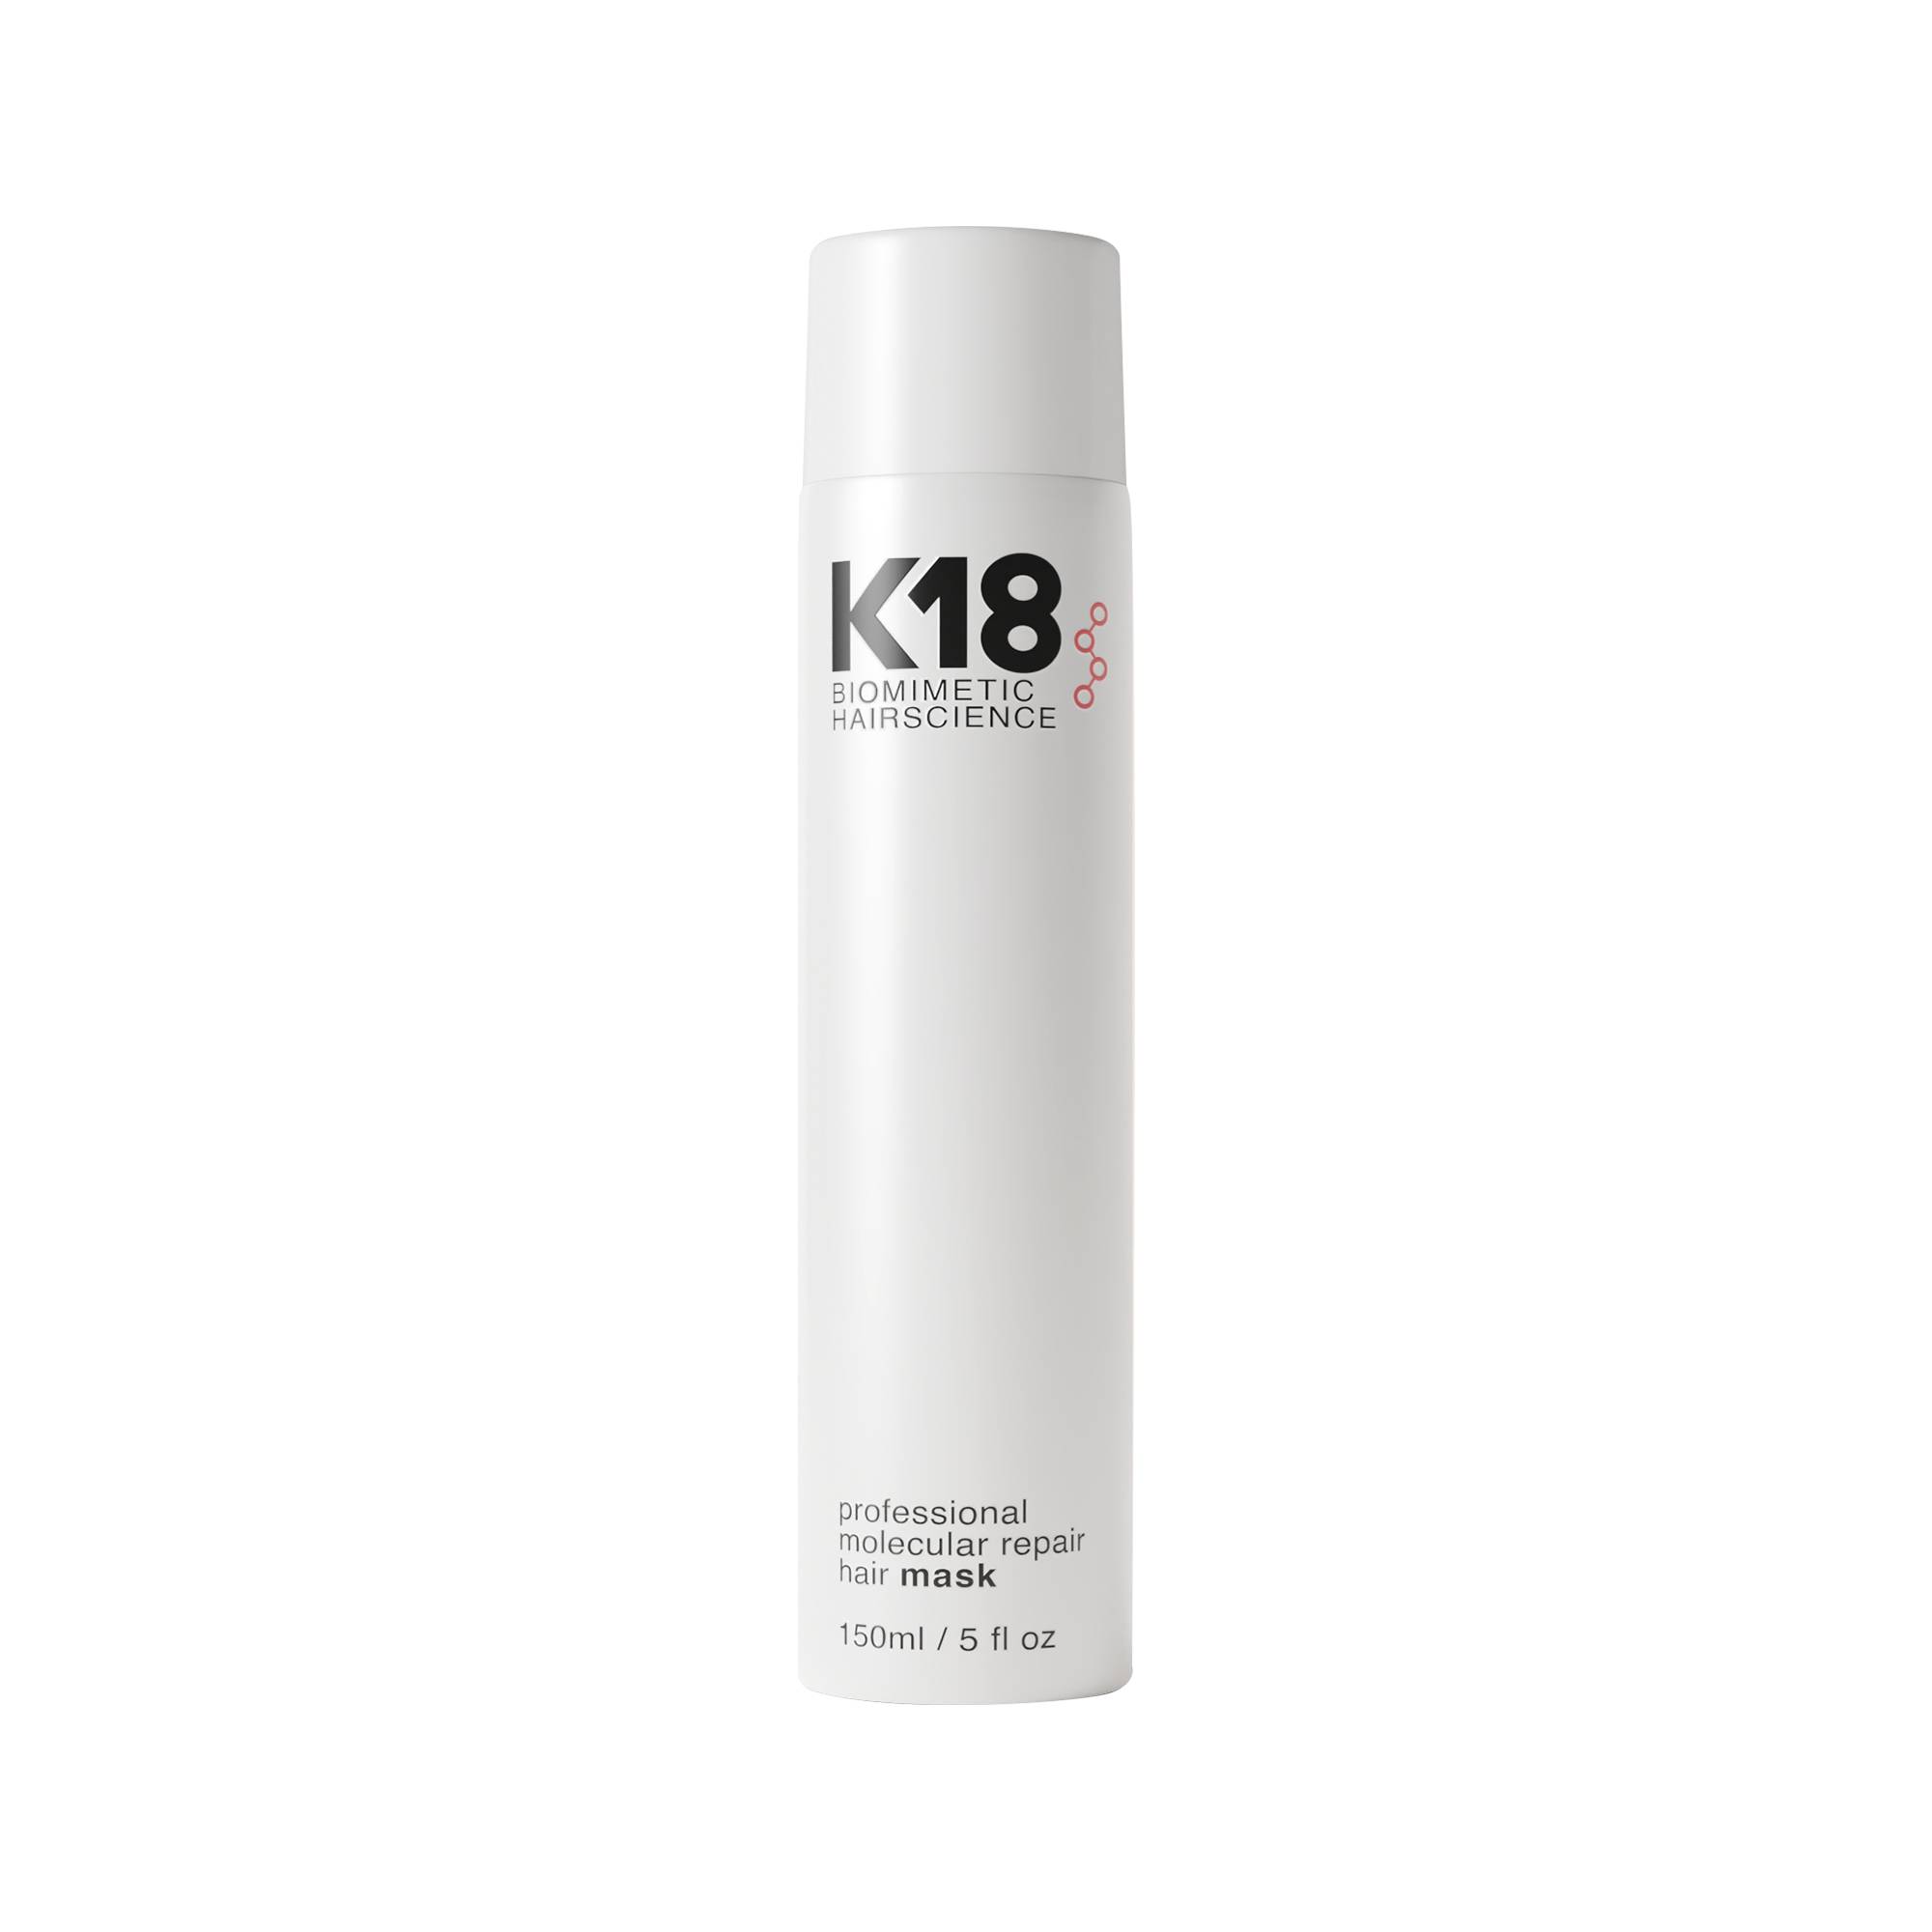 Masque professionnel réparation moléculaire Hair Mask de la marque K18 Biomimetic HairScience Contenance 150ml - 1